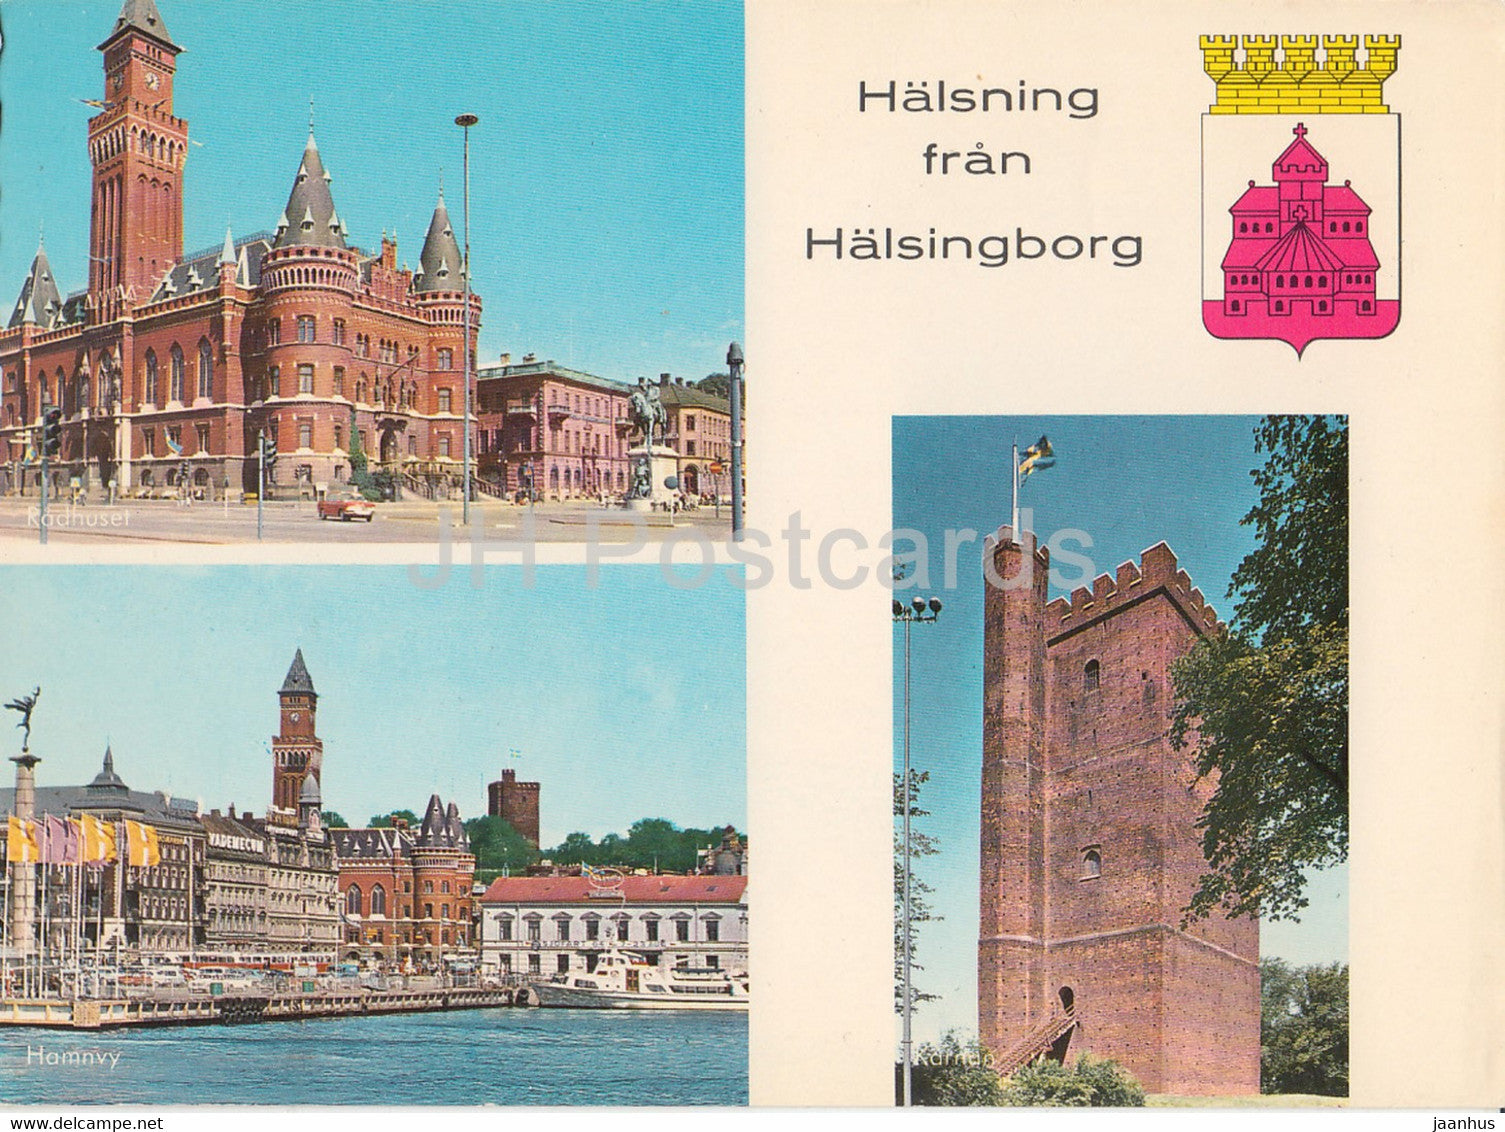 Halsning fran Halsingborg - multiview - Sweden - used - JH Postcards